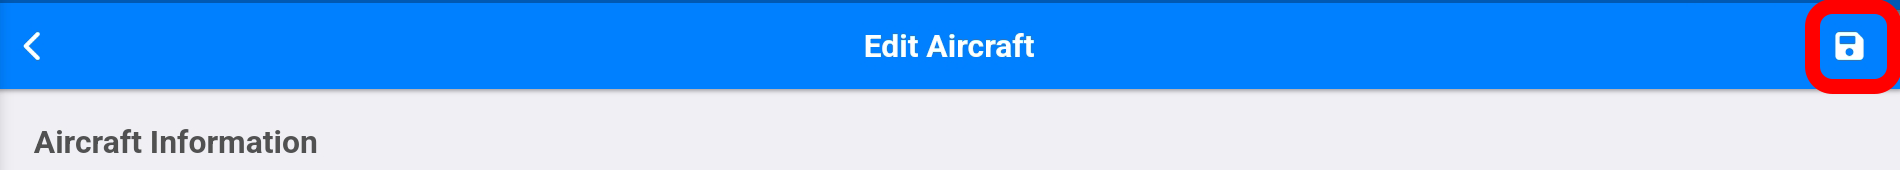 edit aircraft